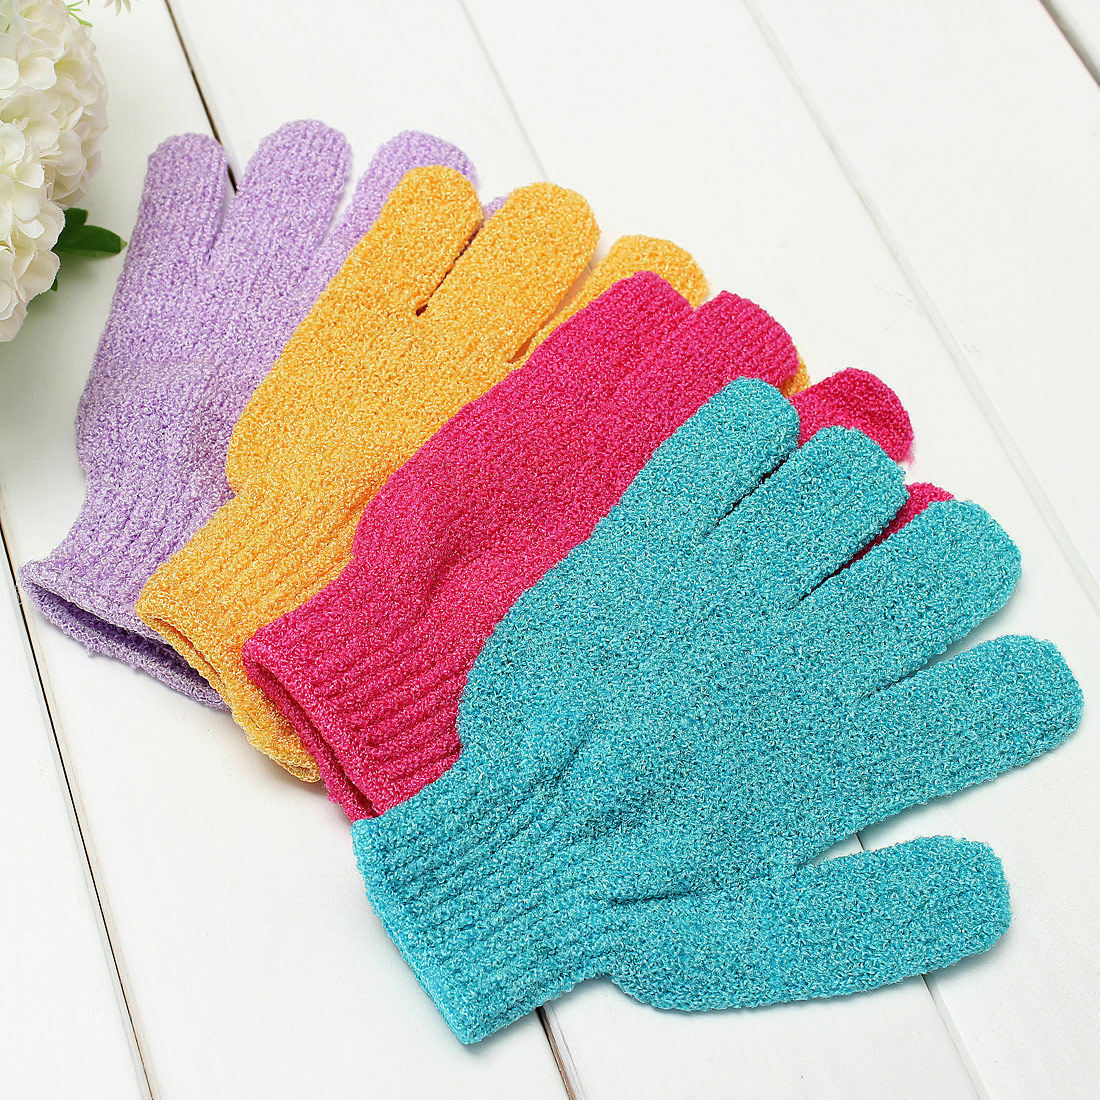 6~24 Pcs Exfoliating Spa Bath Gloves Shower Soap Clean Hygiene Wholesale Lots